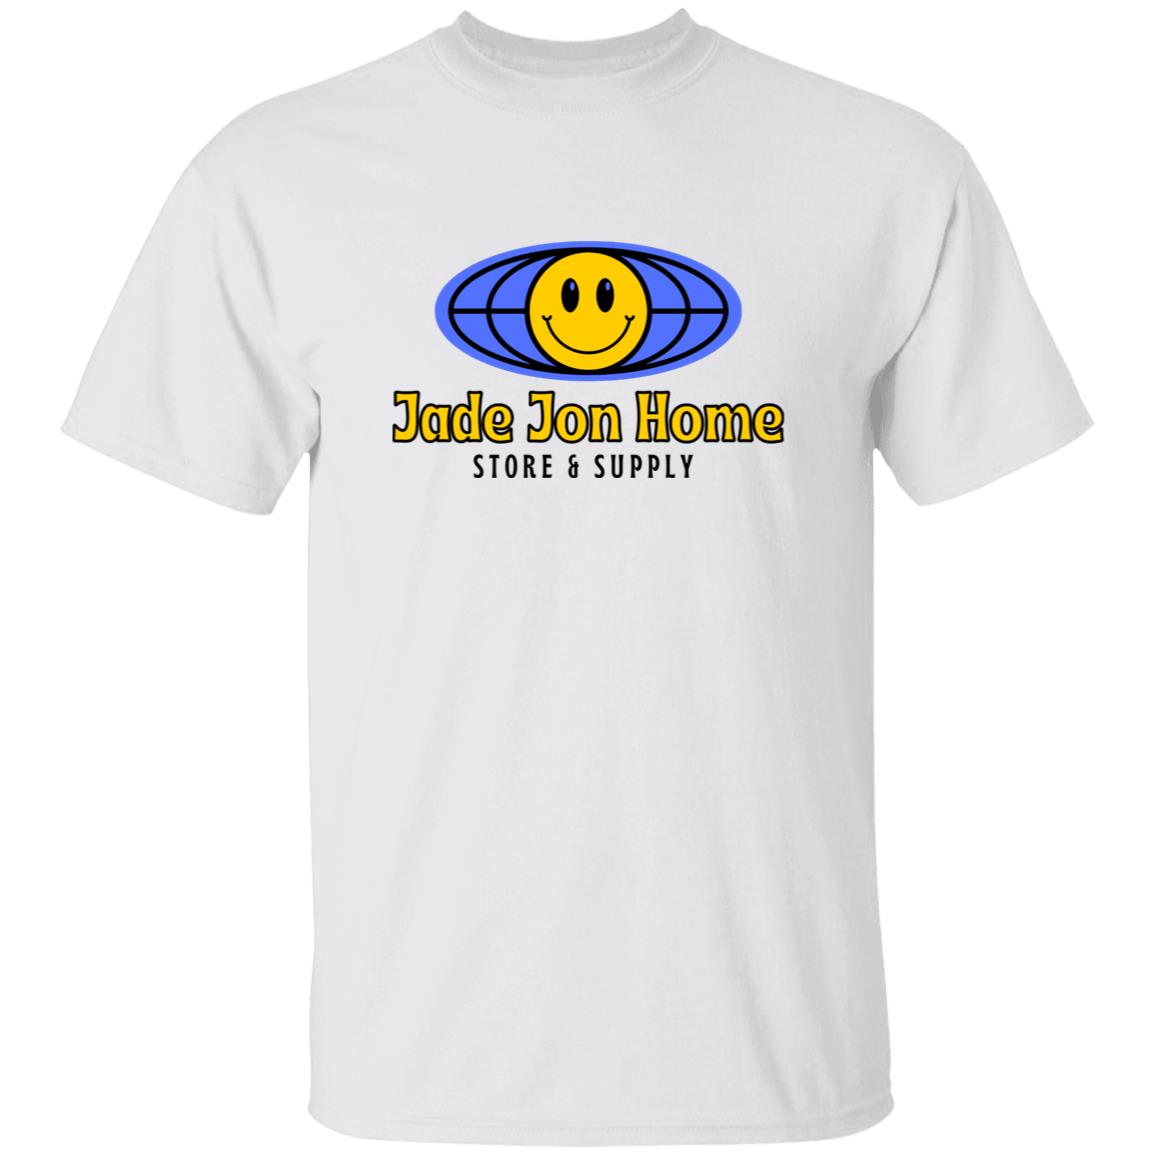 Jade Jon Smiley Tee